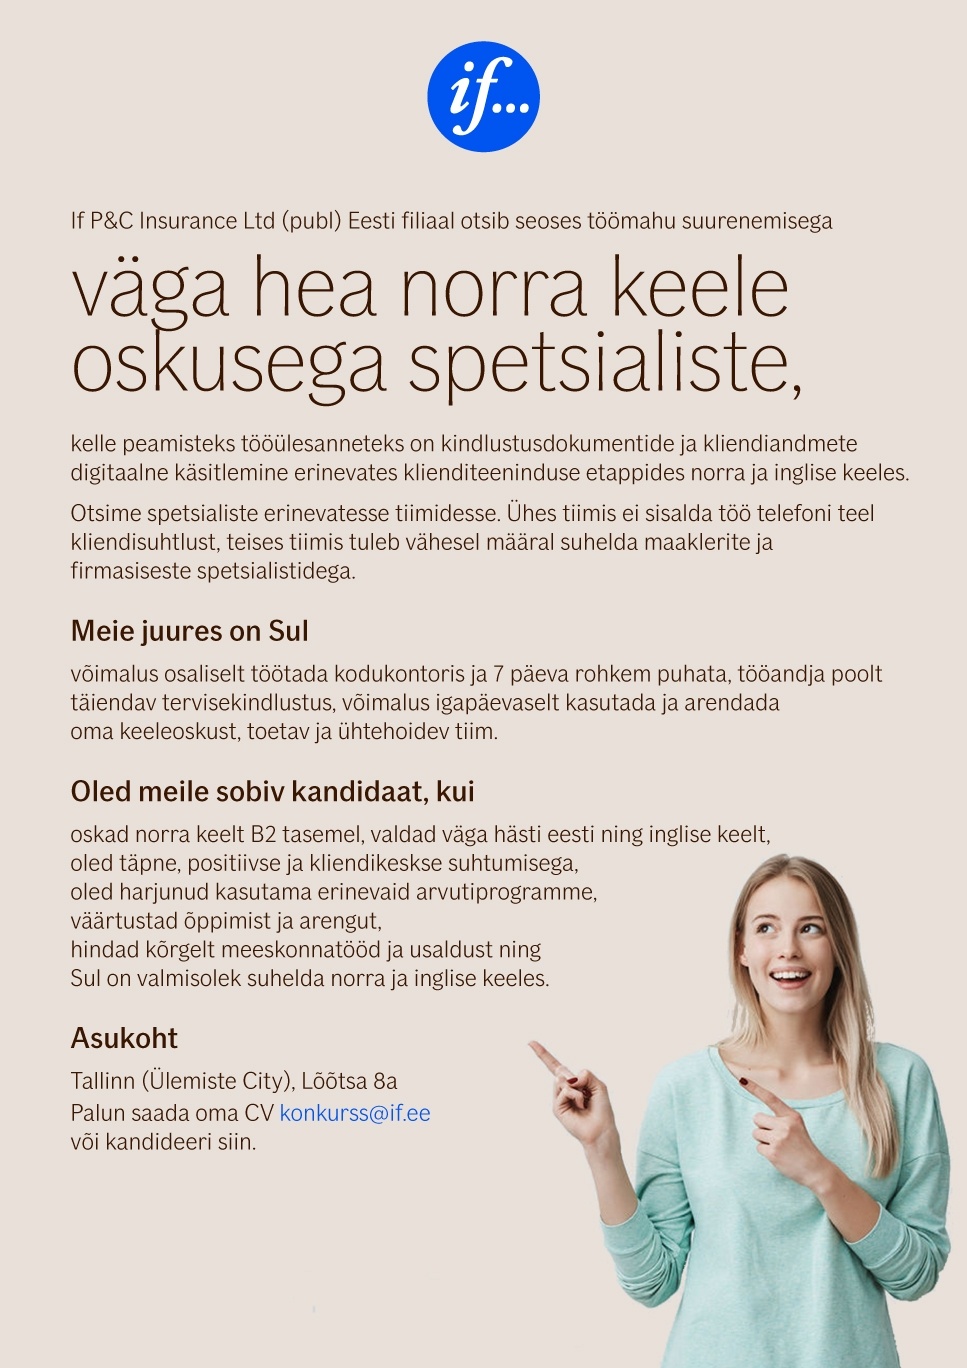 If P&C Insurance Ltd (publ) Eesti filiaal NORRA KEELE OSKUSEGA SPETSIALIST